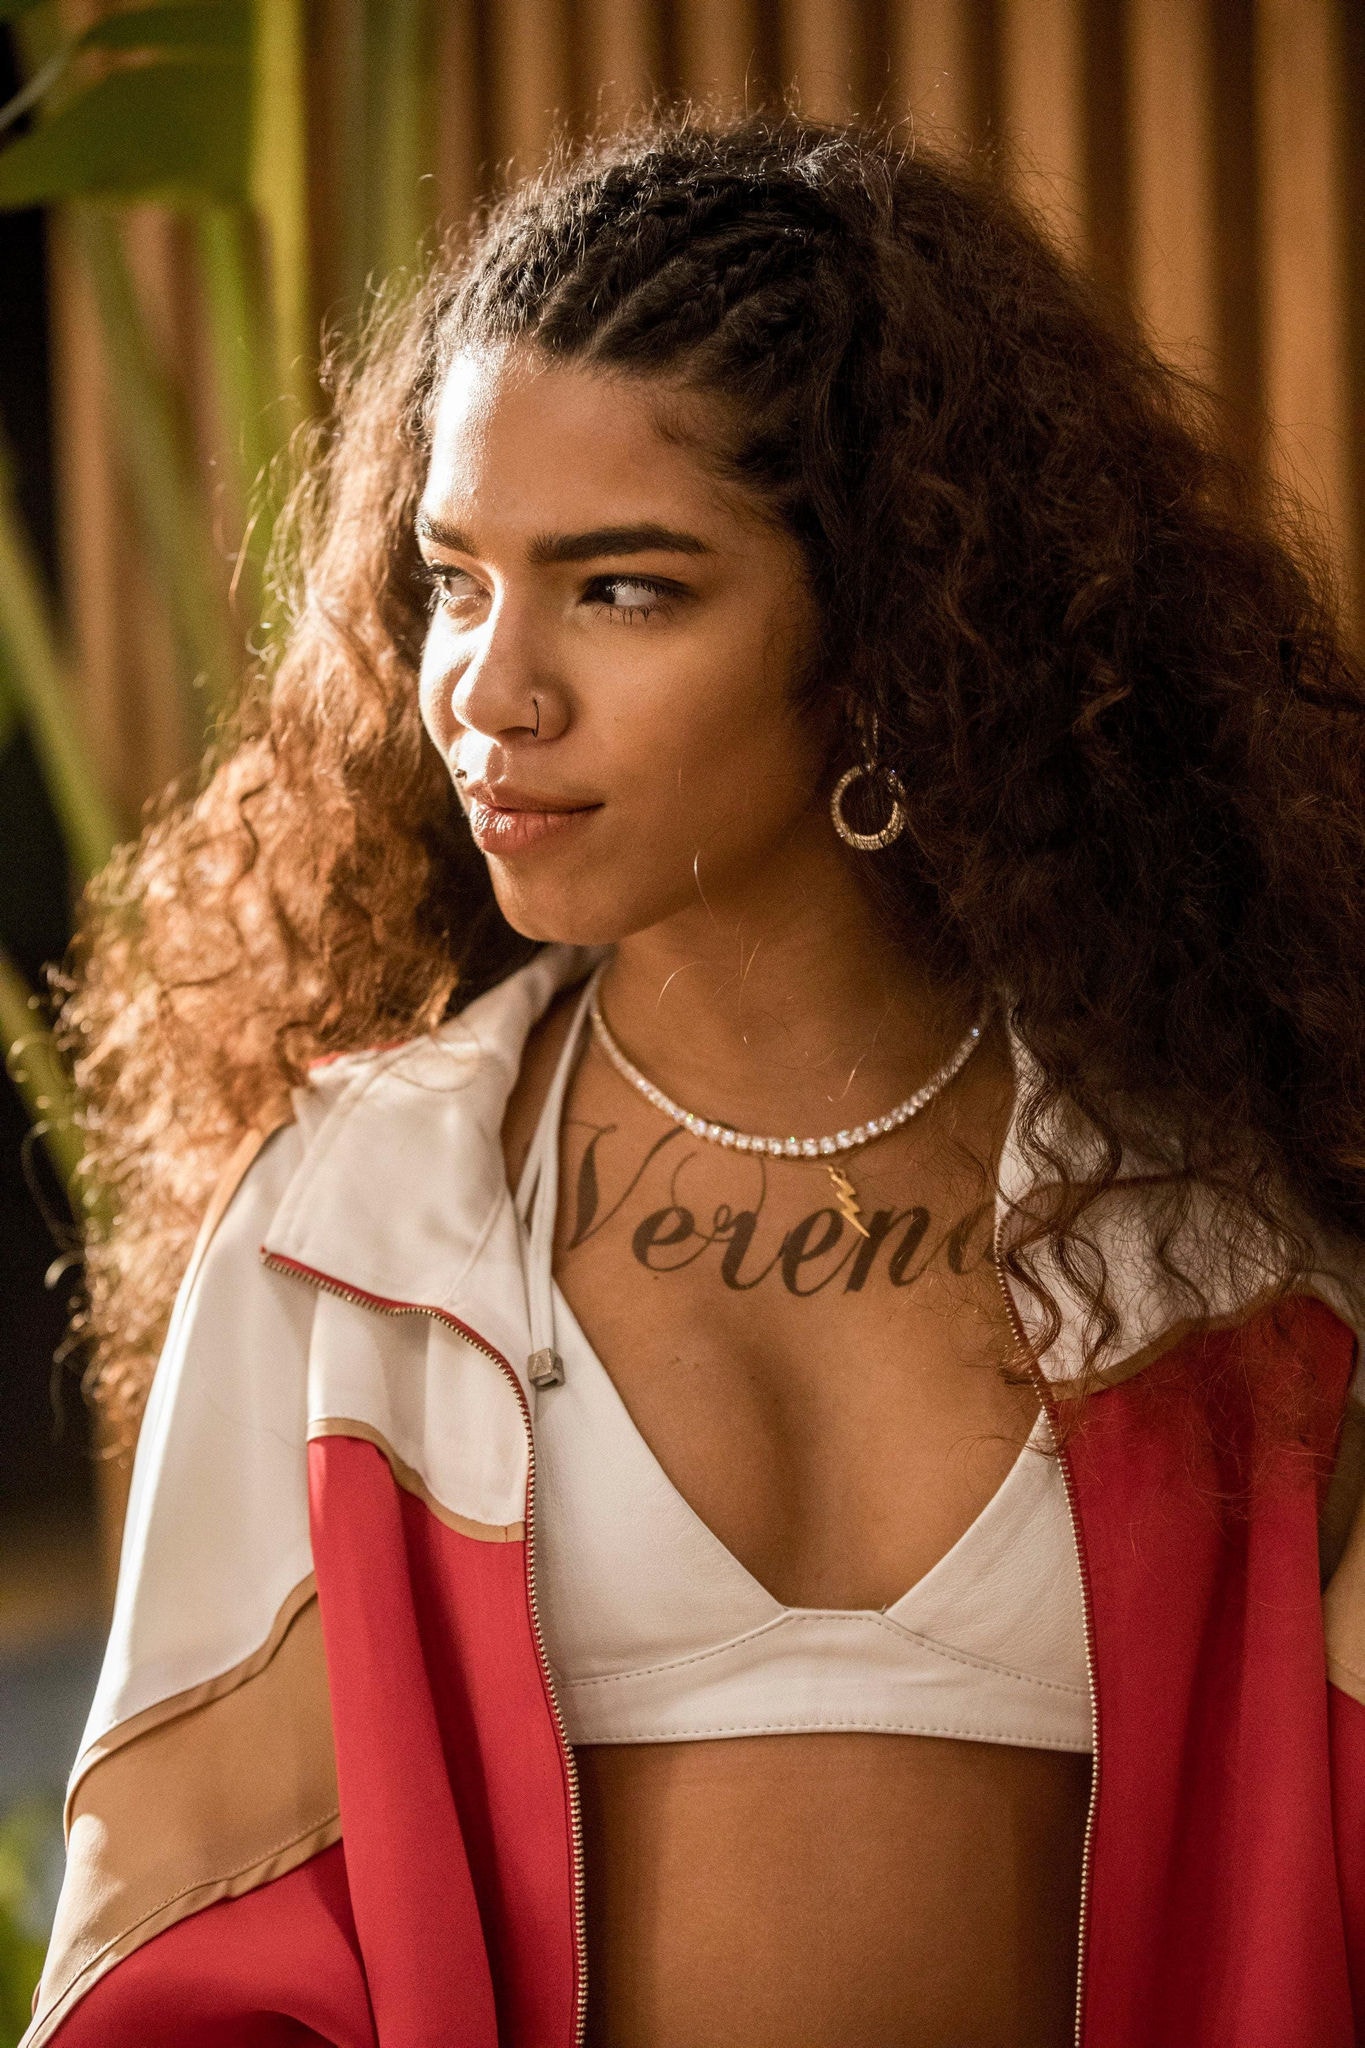 Maria interpretou a personagem Verena na novela 'Amor de Mãe', da Globo